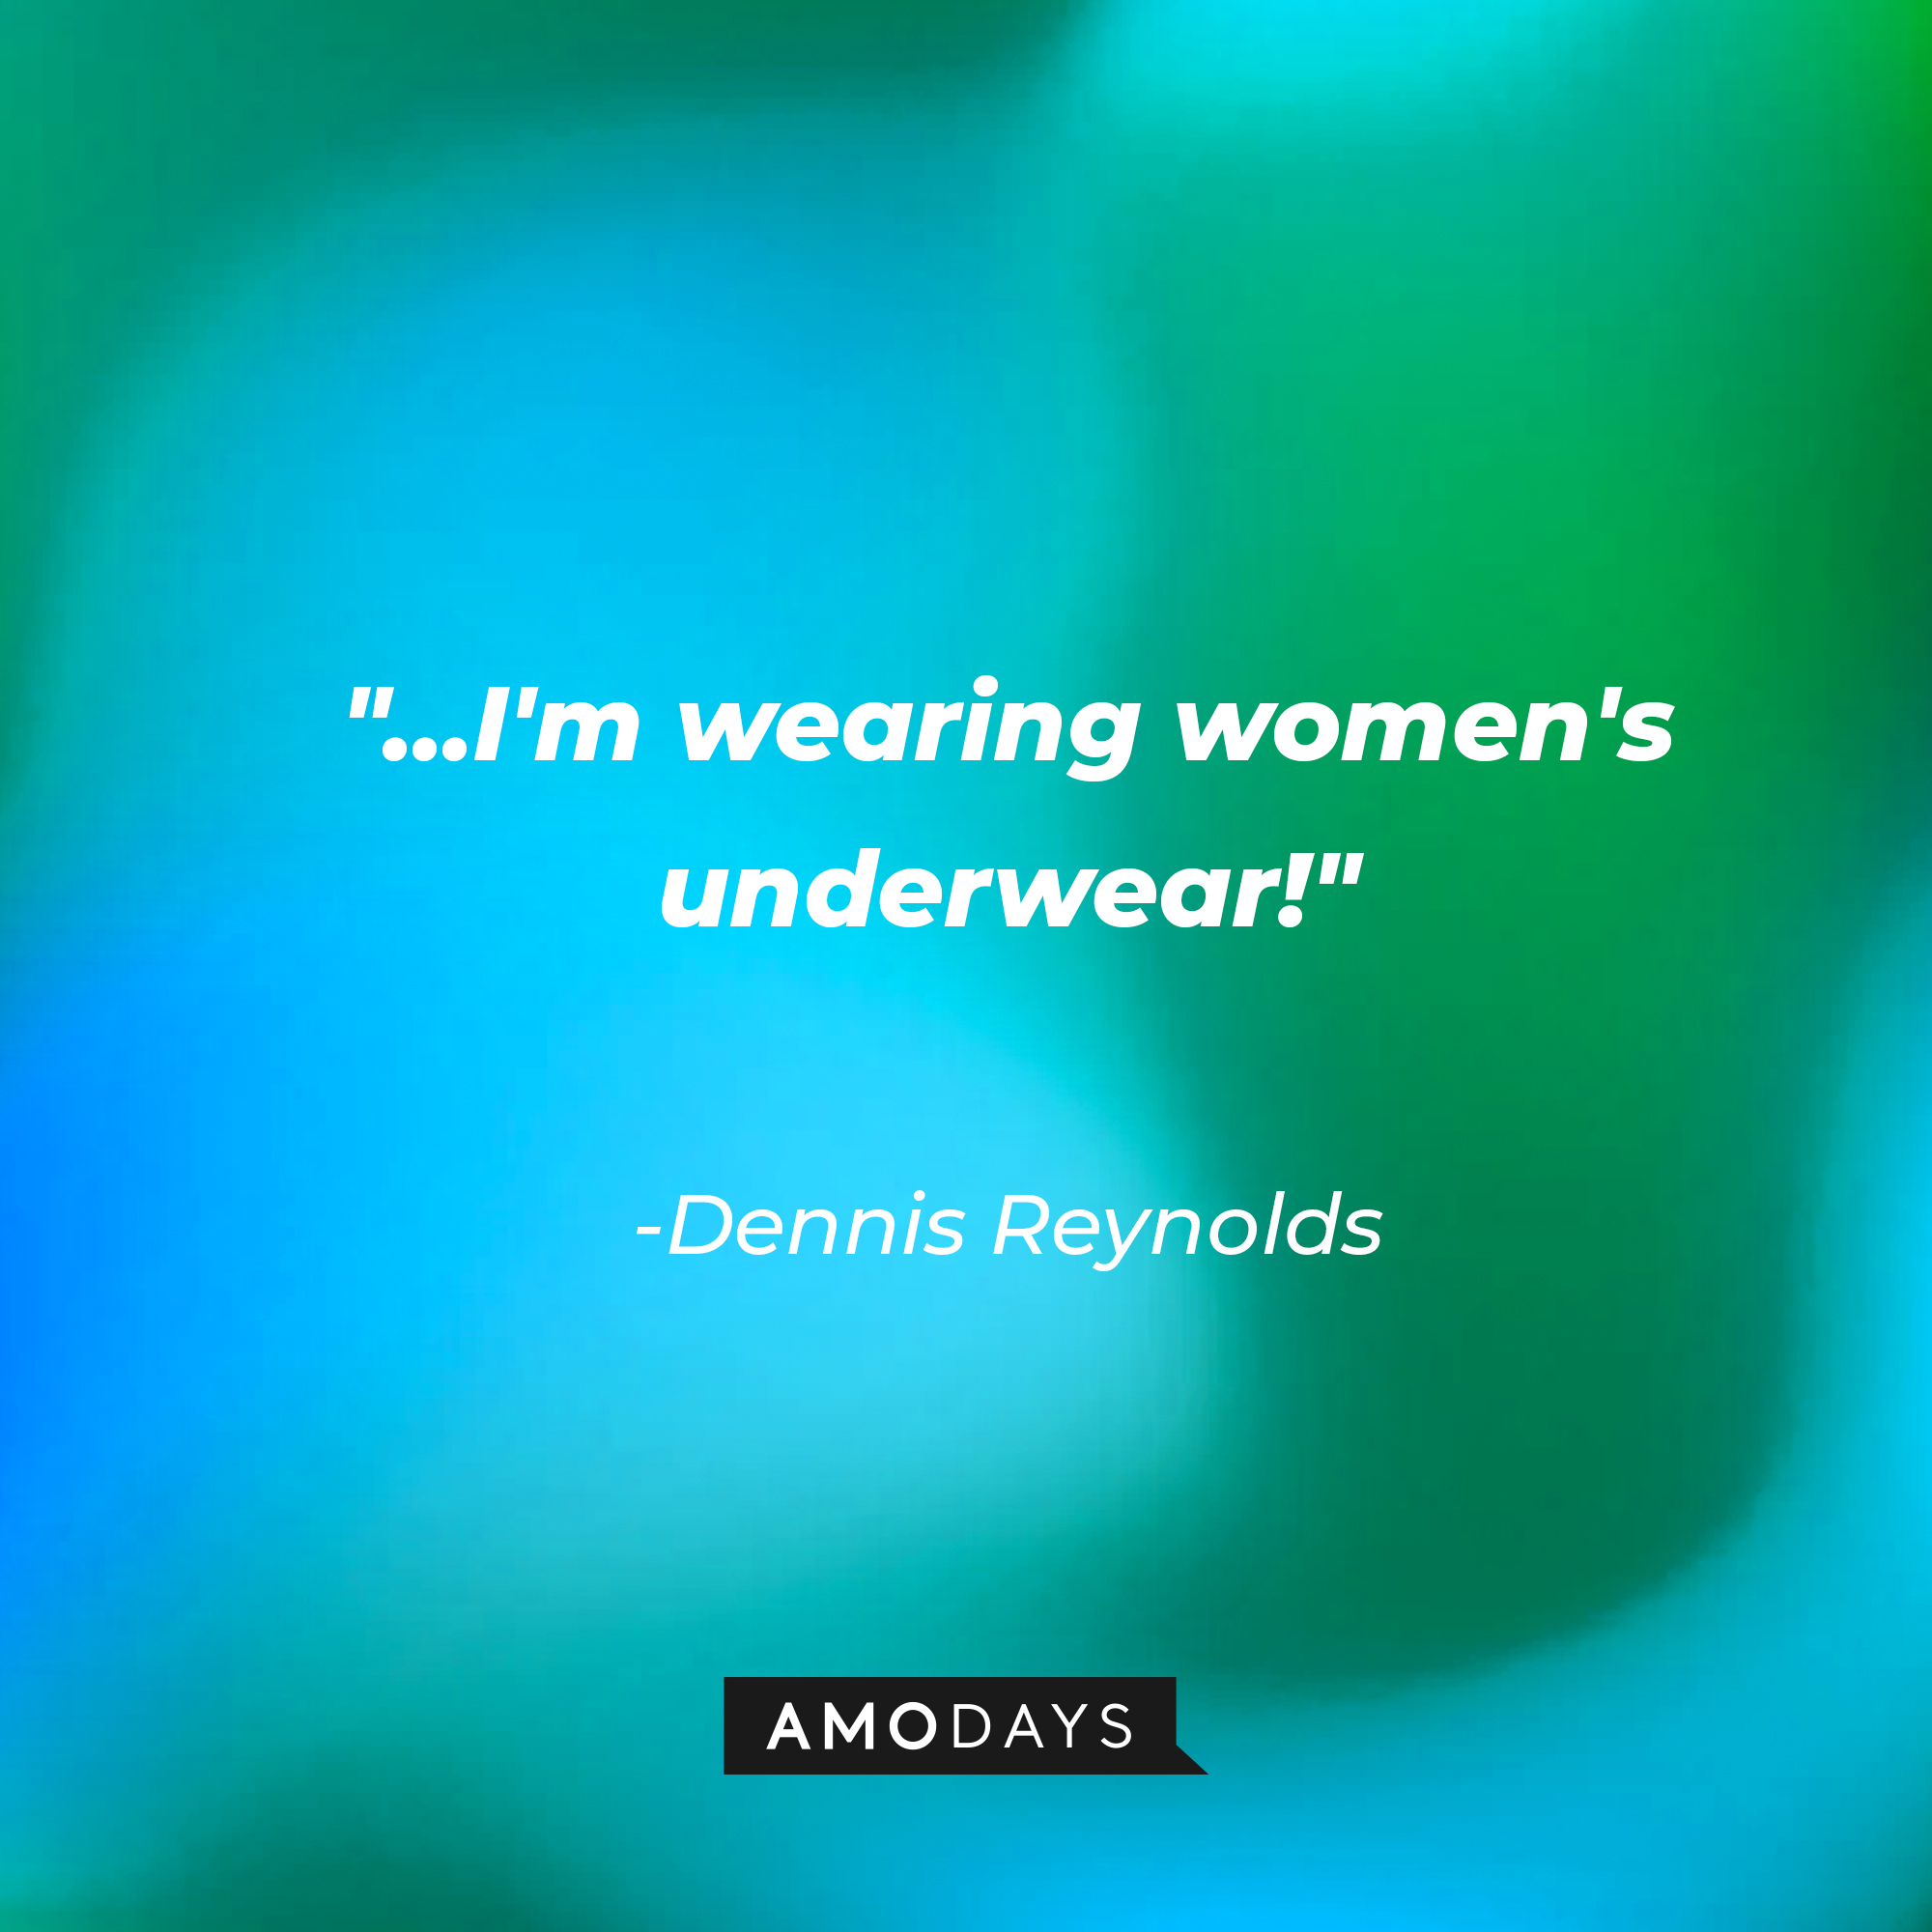 Dennis Reynolds’ quote:  “...I'm wearing women's underwear!” | Source: AmoDays